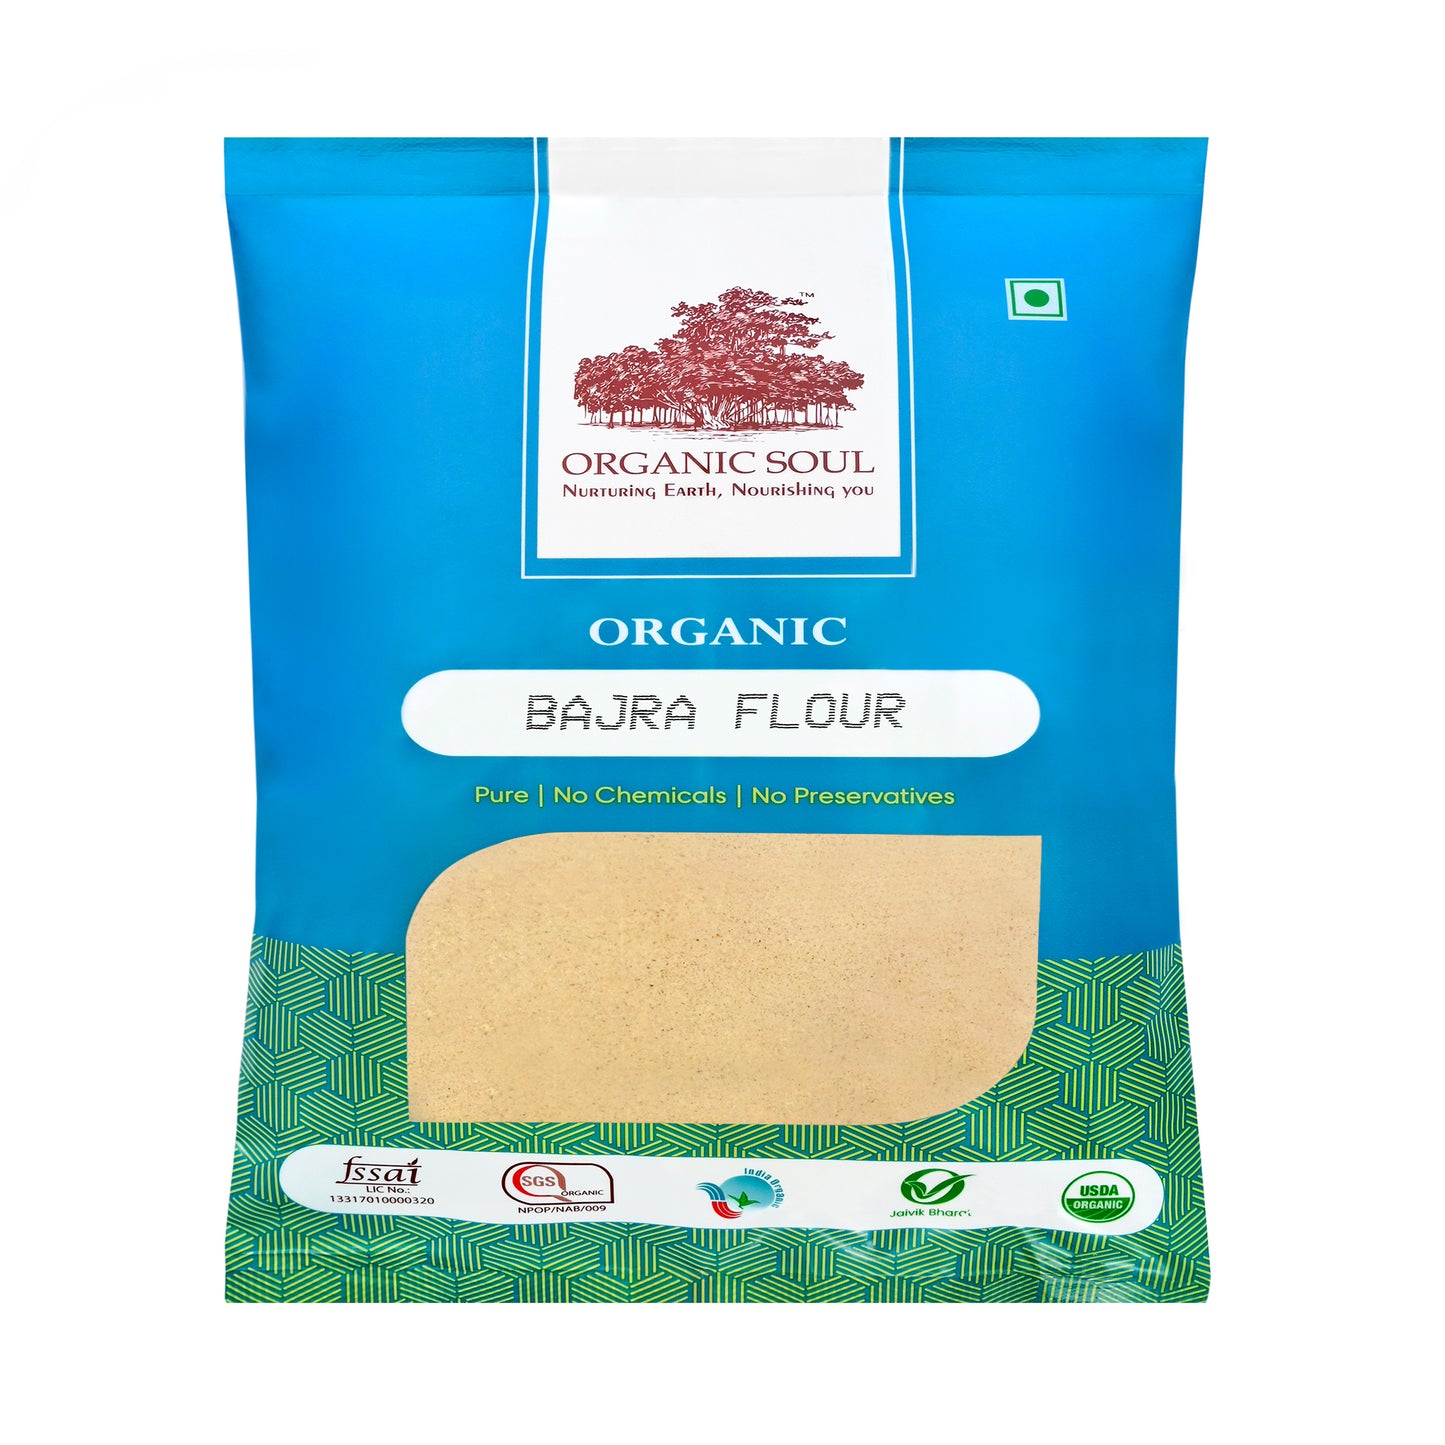 ORGANIC SOUL - Organic Bajra Flour(Pearl Millet) Gluten-Free Flour/Atta, (450 gm or 900 gm) | Rich in Magnesium, Iron, Calcium, and Fiber